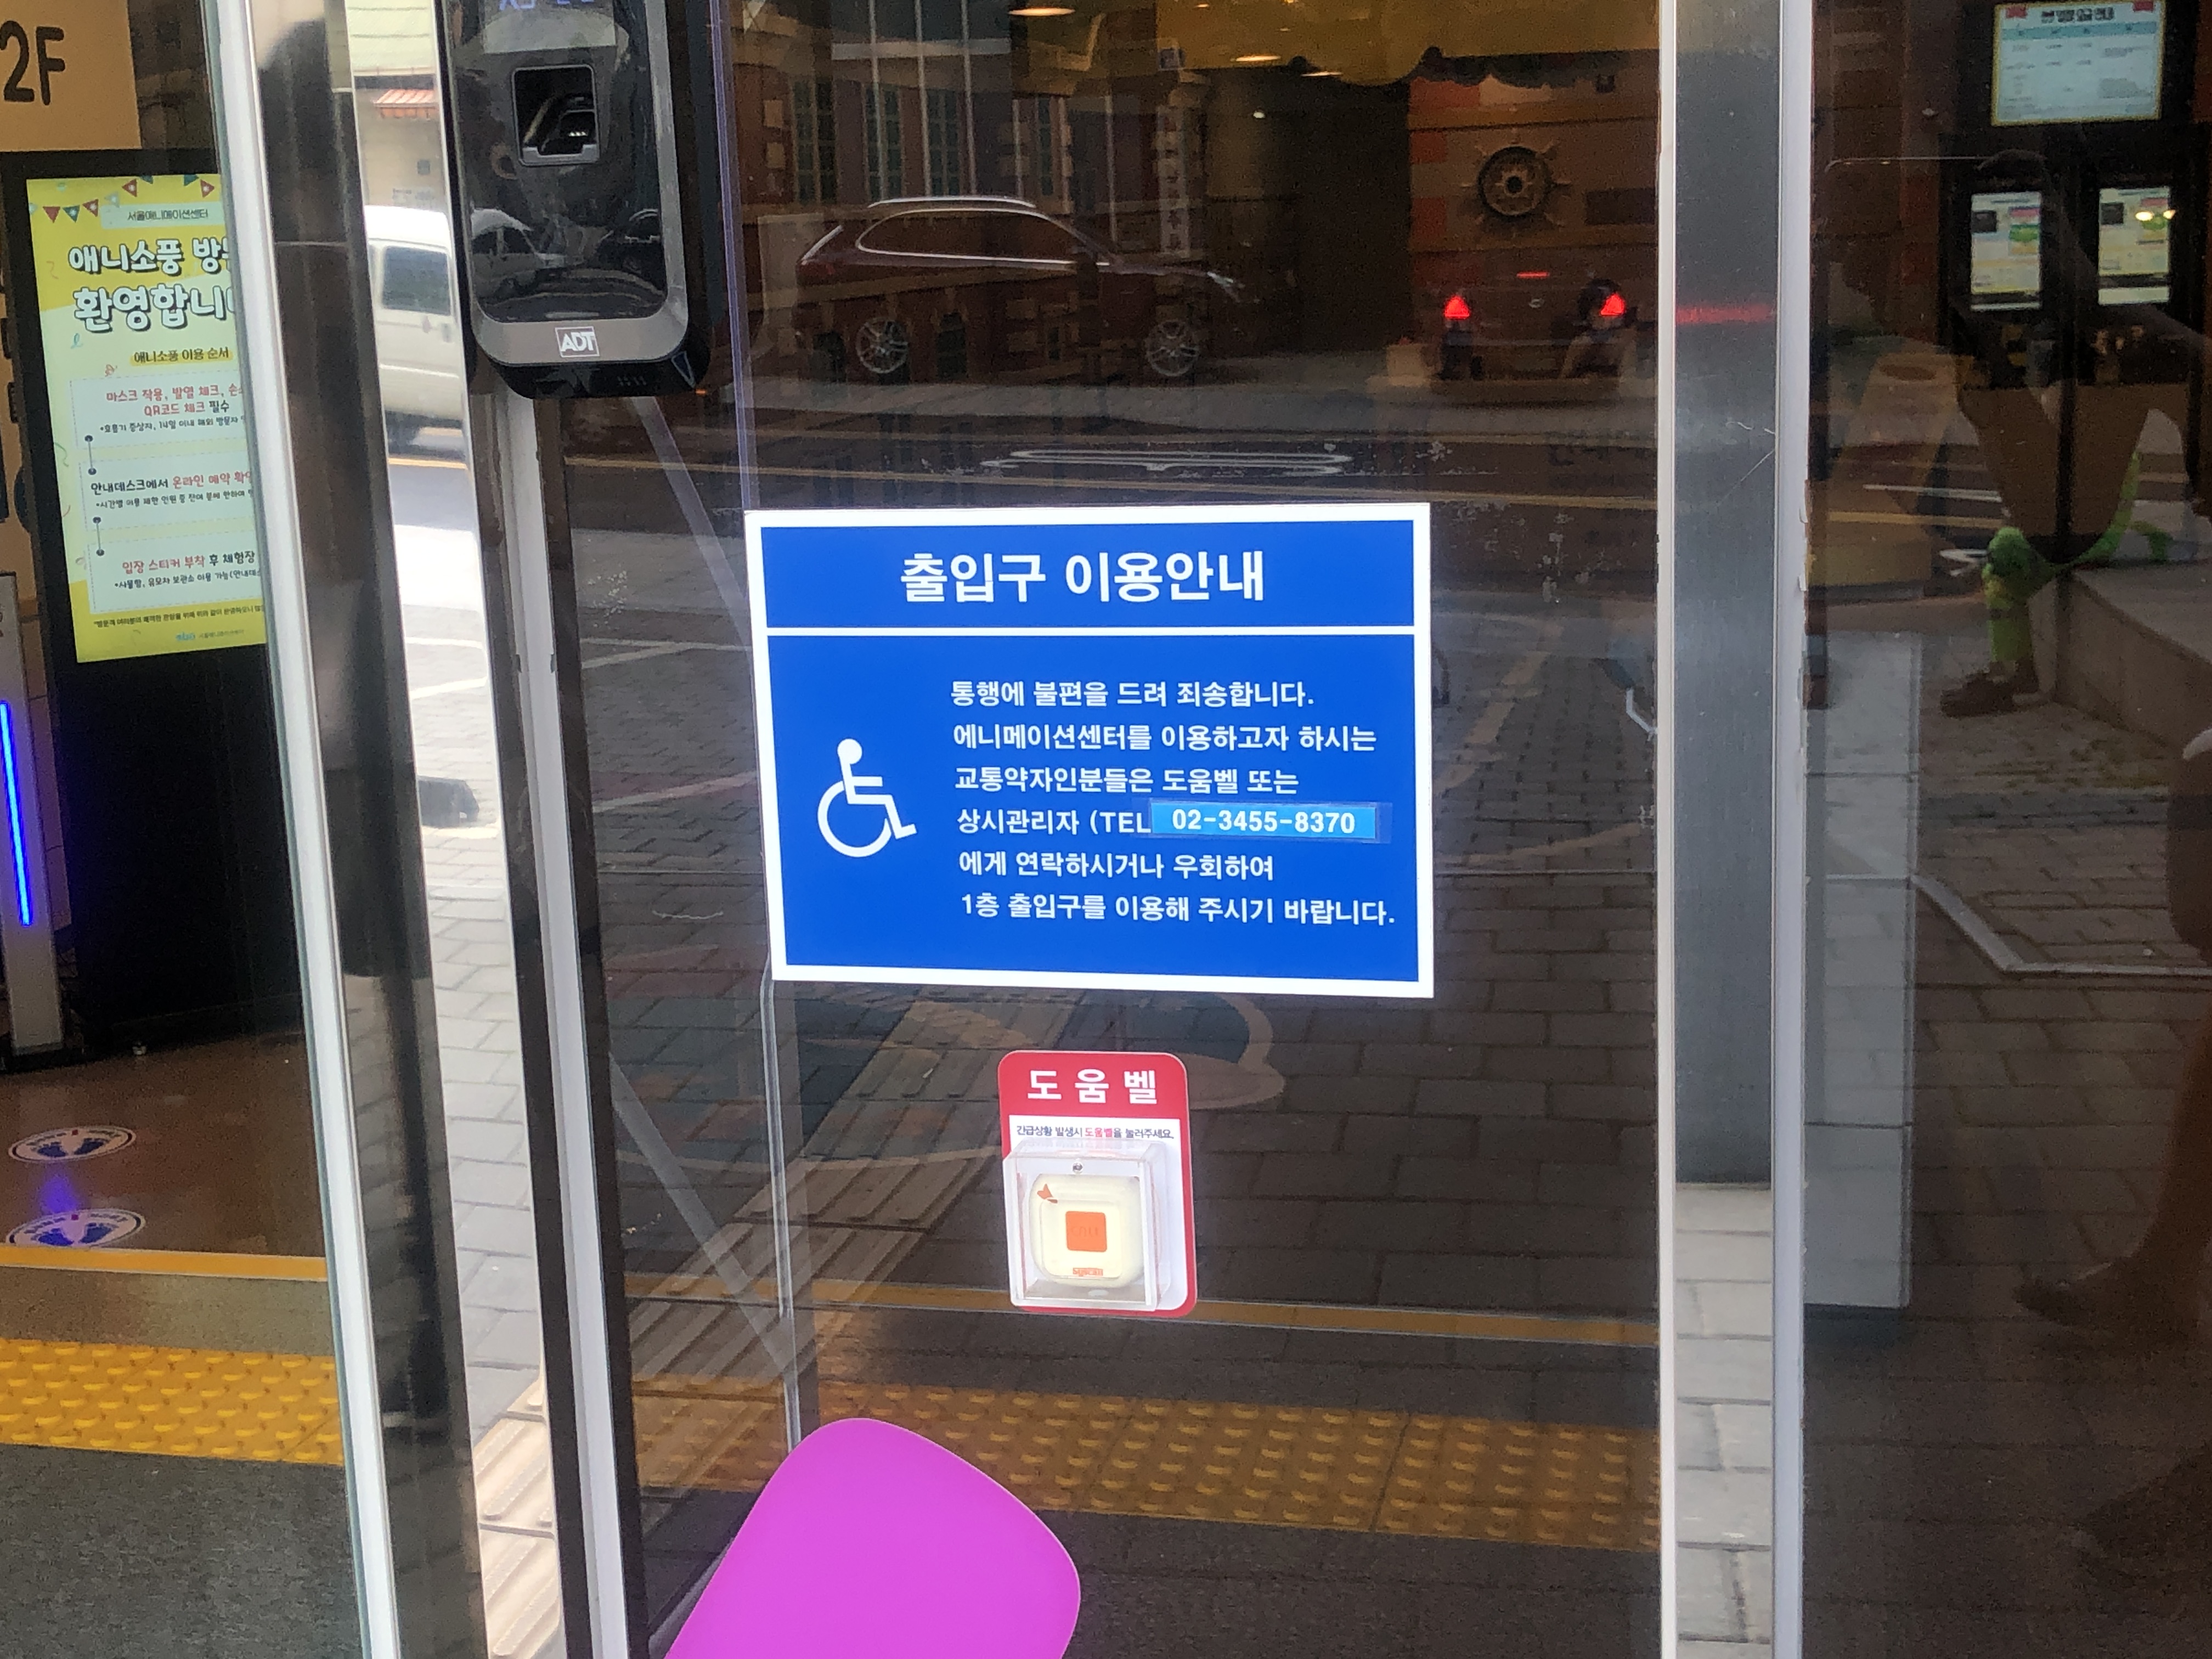 점자안내판/안내데스크0 : 서울애니메이션센터 출입구 이용안내판과 휠체어 사용자를 위한 도움벨